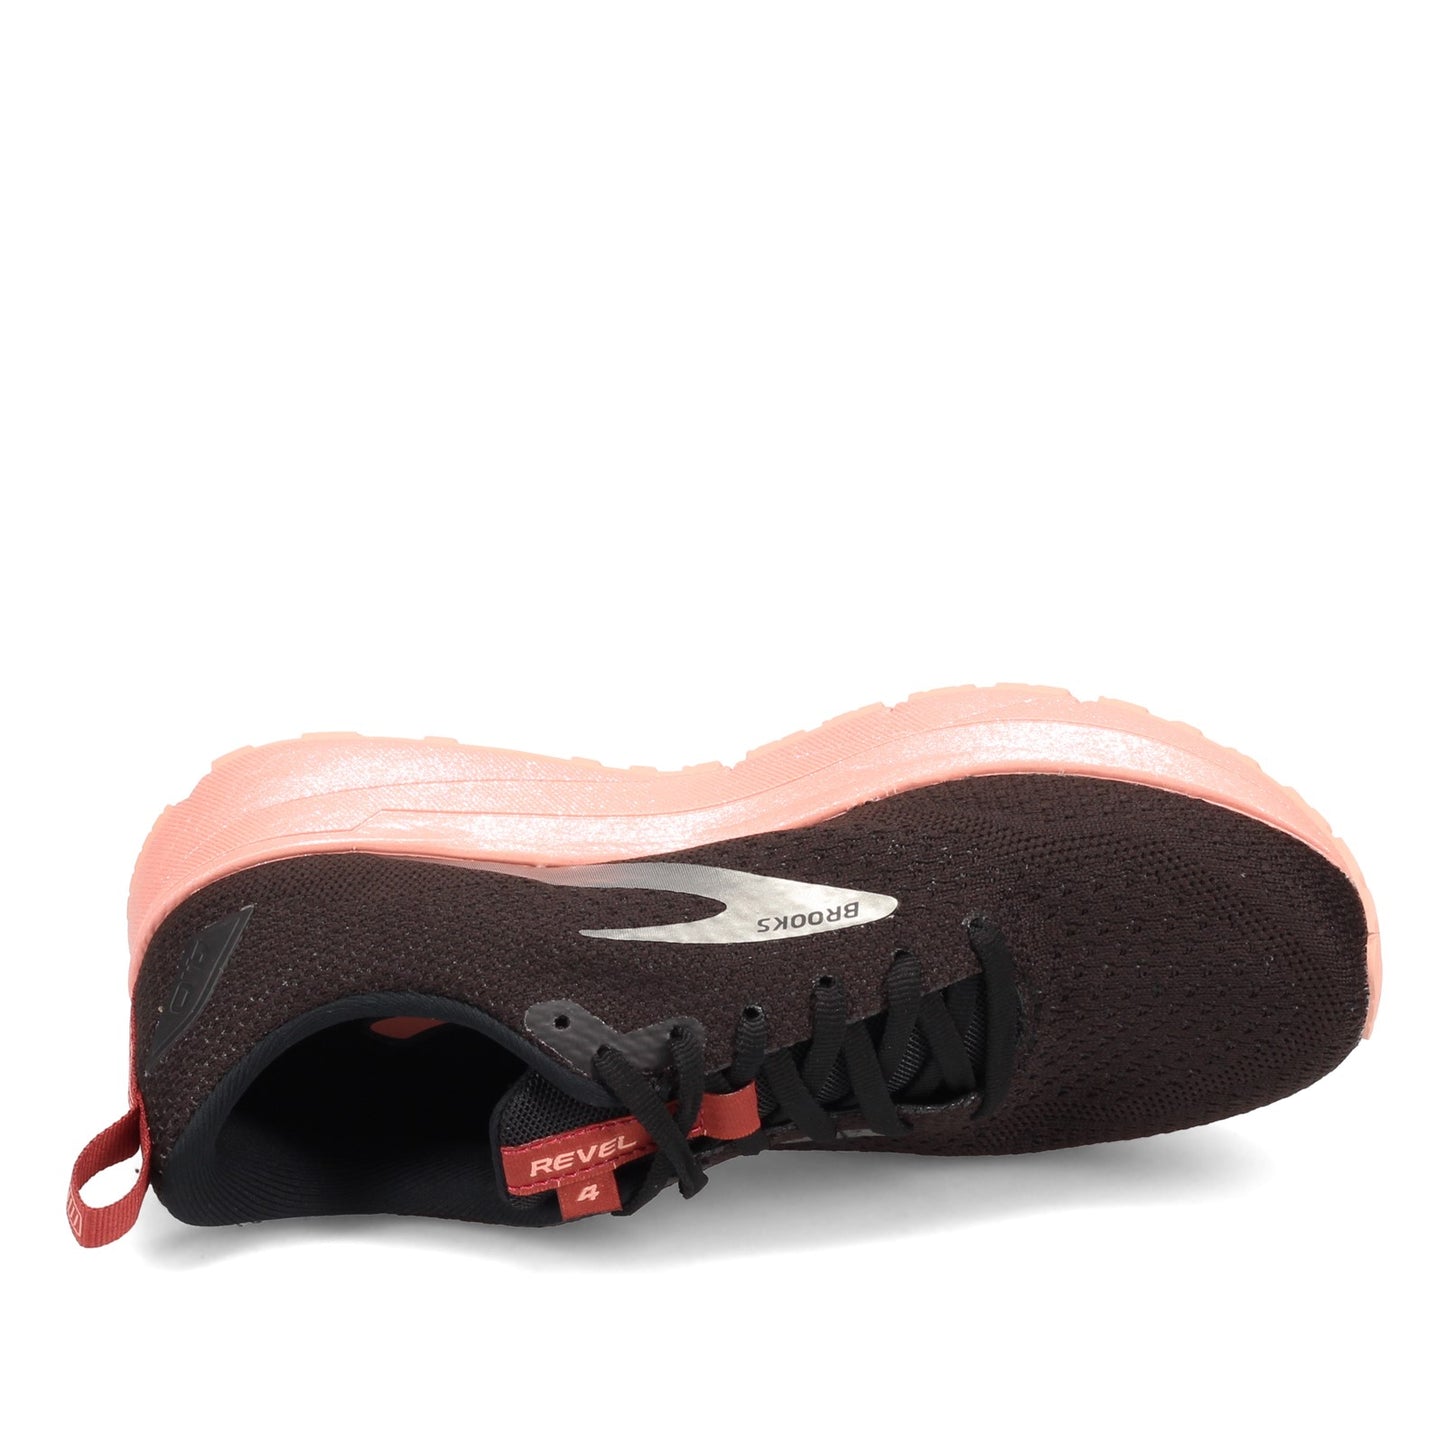 Peltz Shoes  Women's Brooks Revel 4 Running Shoe Black/Marsala/Lobster 120337 1B 024